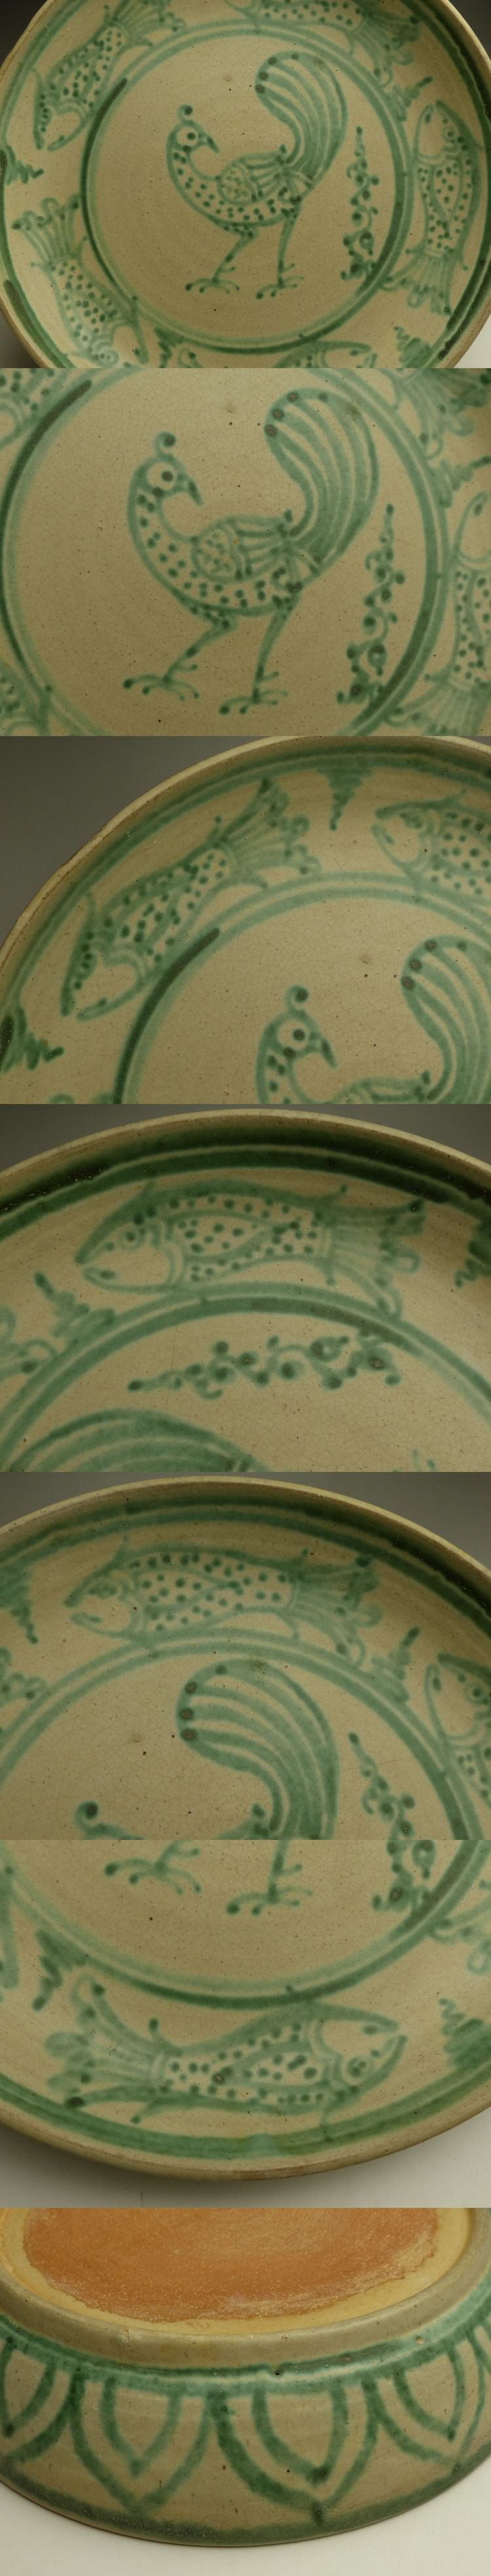 古美術 猫   メソット白釉緑彩大皿   古美術品専門サイト